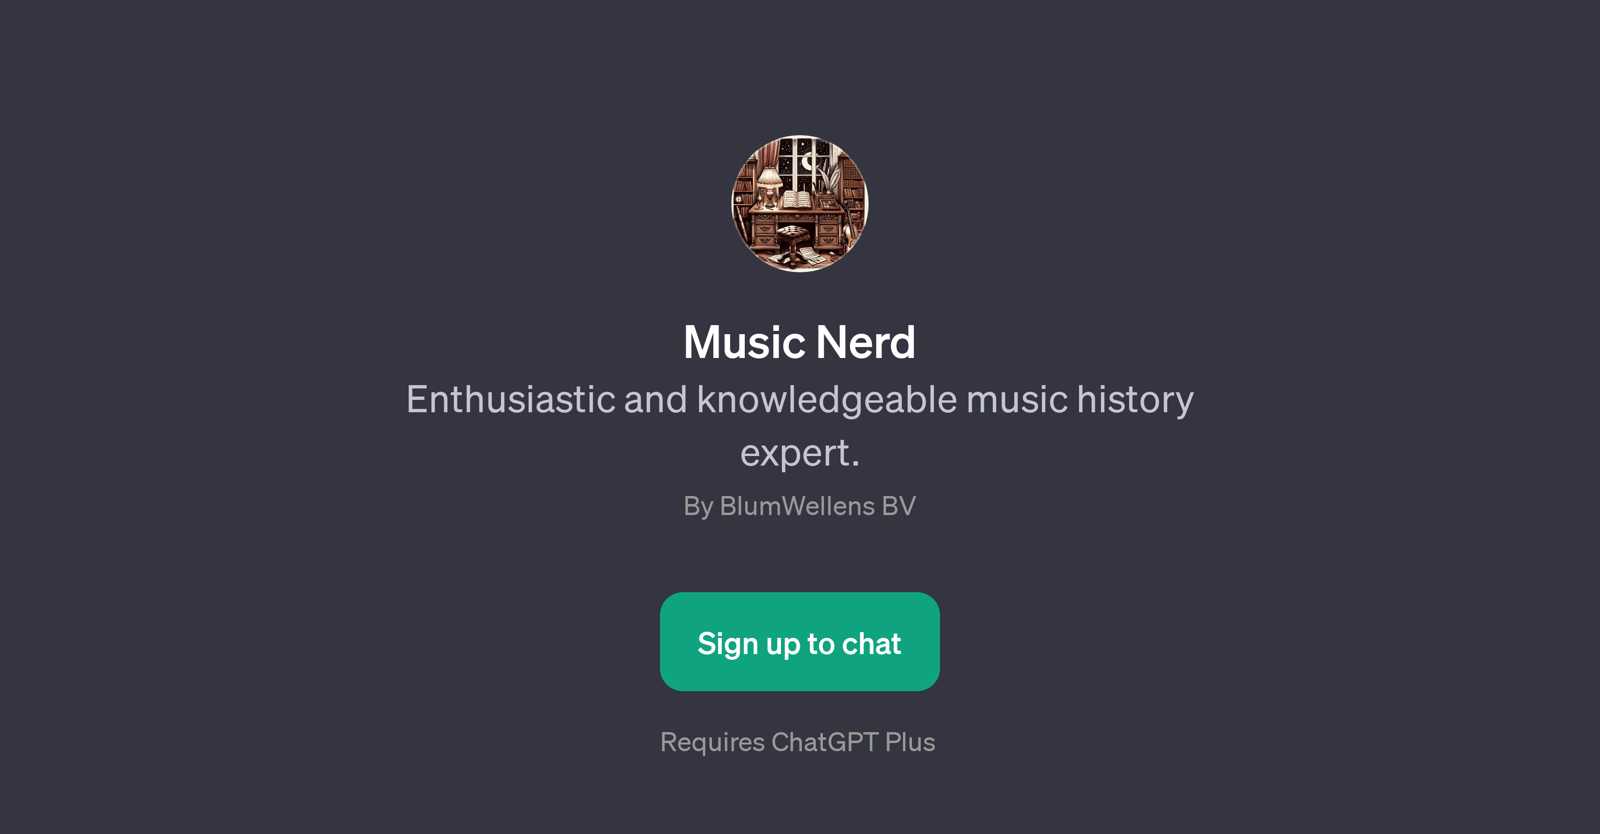 Music Nerd website